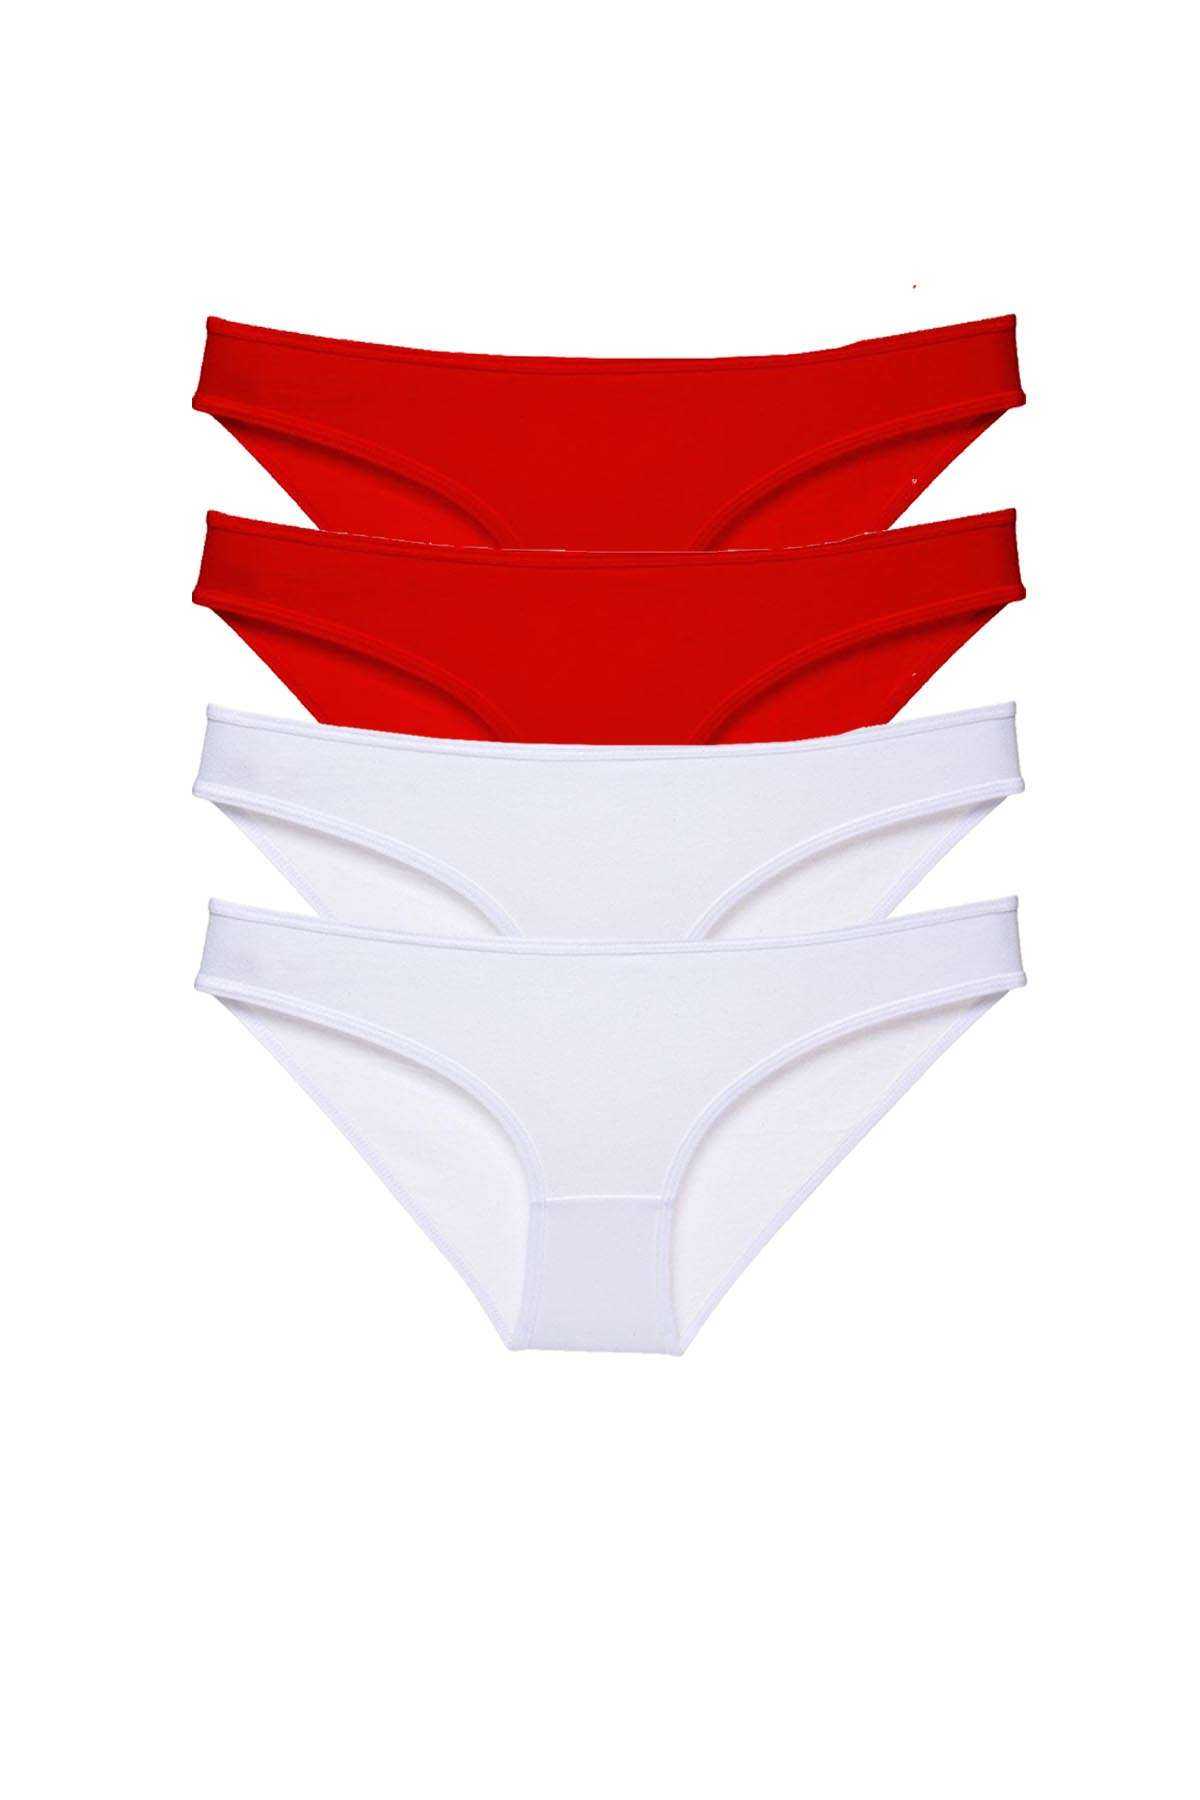 4 adet Süper Eko Set Likralı Kadın Slip Külot Kırmızı Beyaz